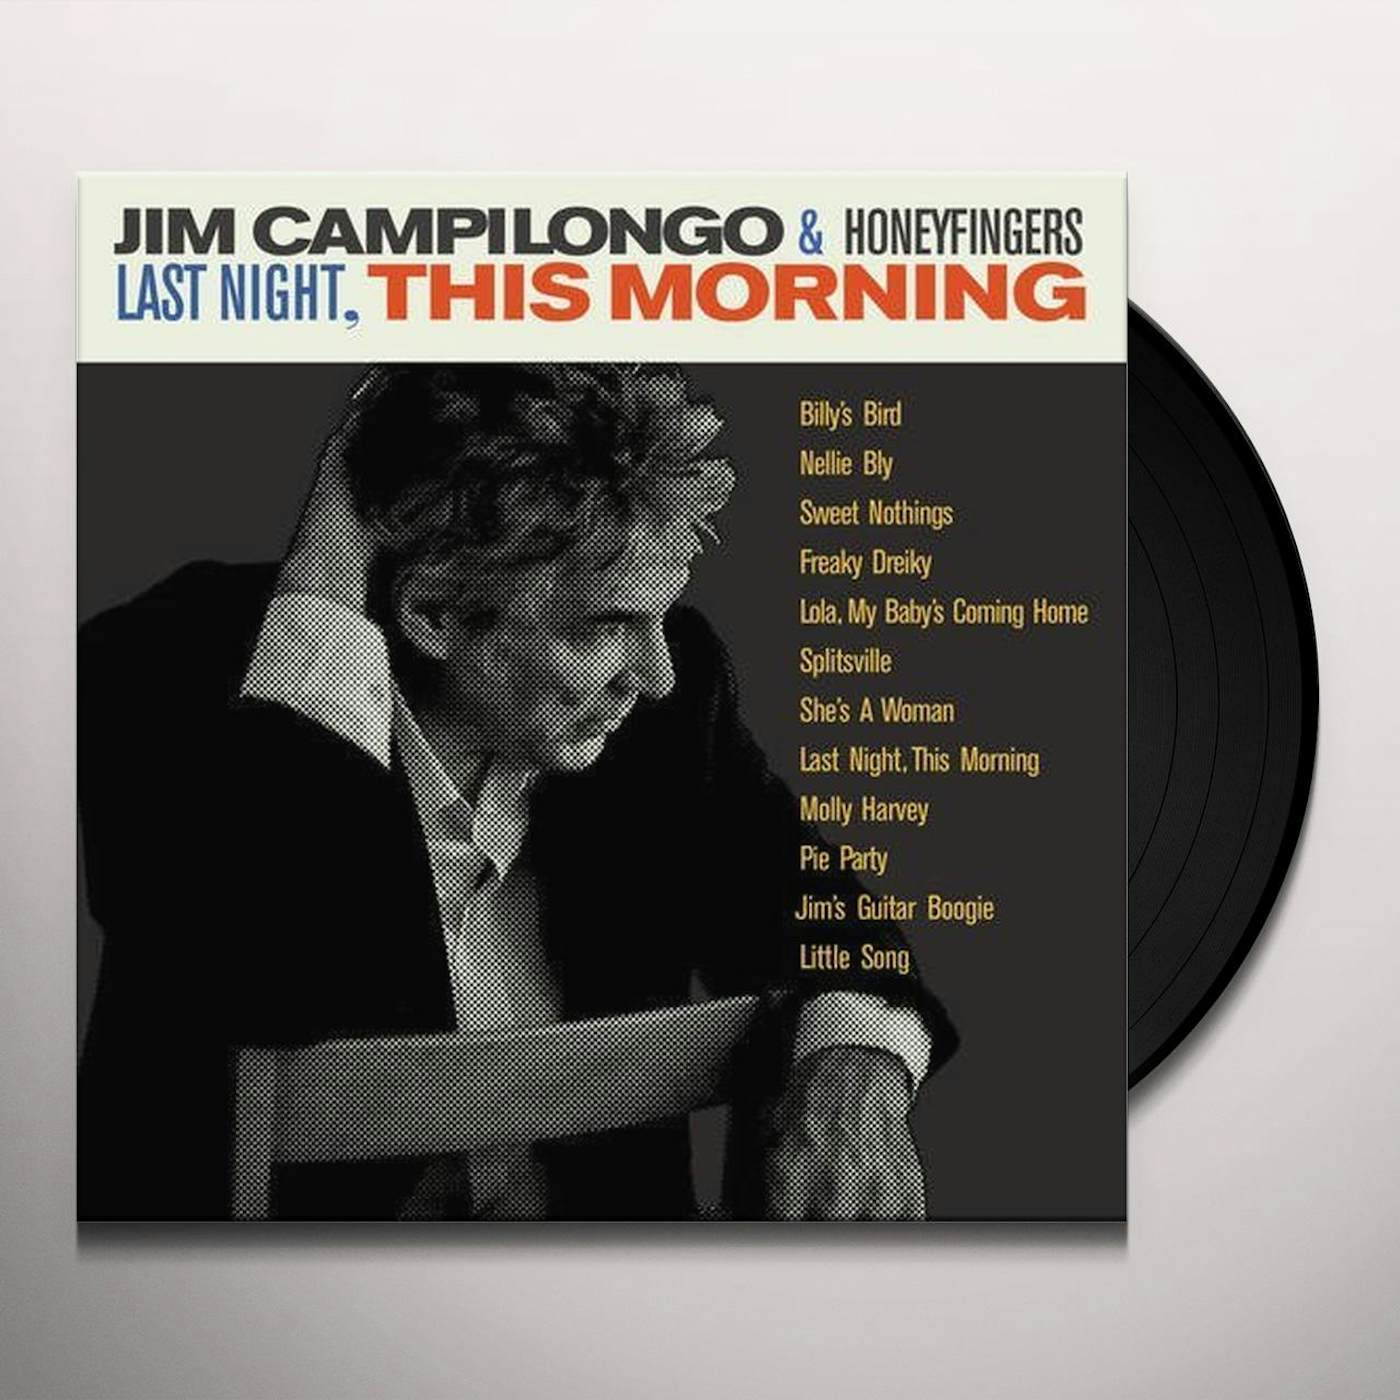 Jim Campilongo & Honeyfingers